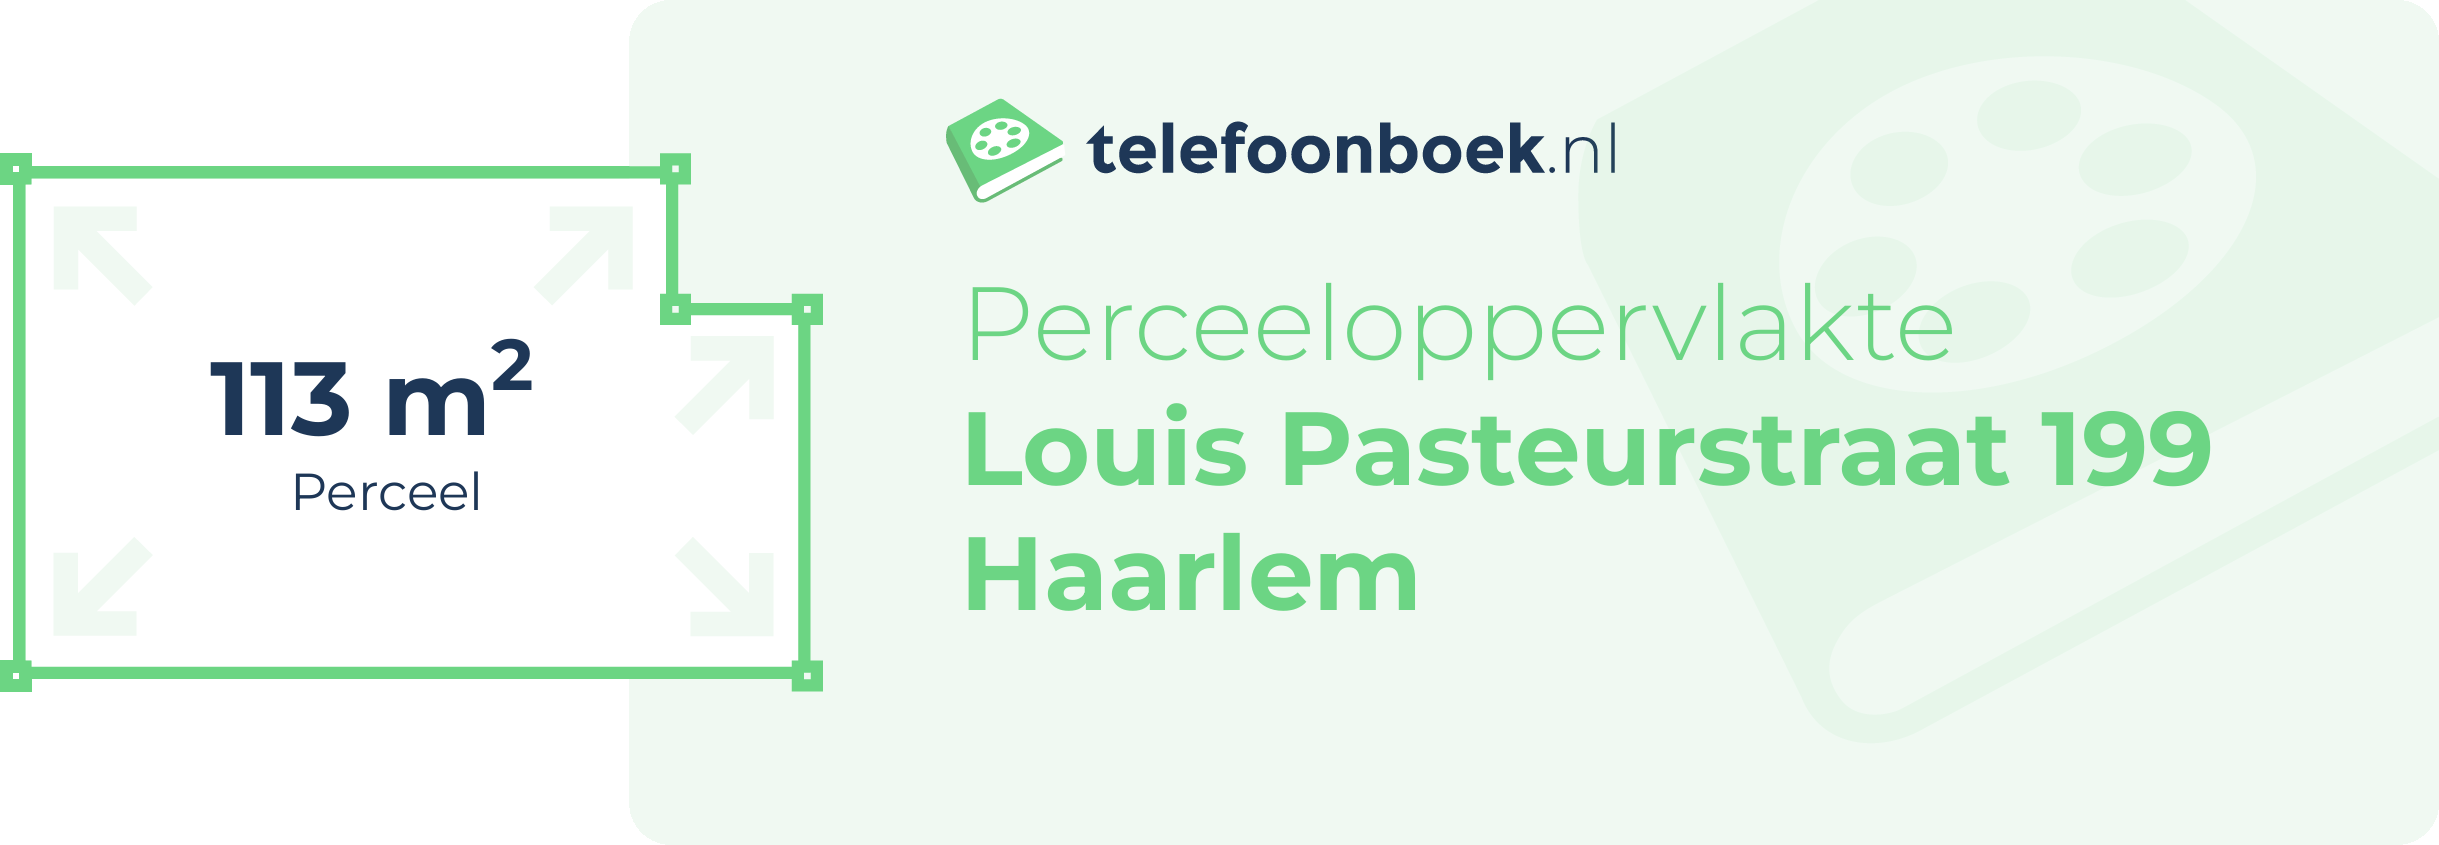 Perceeloppervlakte Louis Pasteurstraat 199 Haarlem